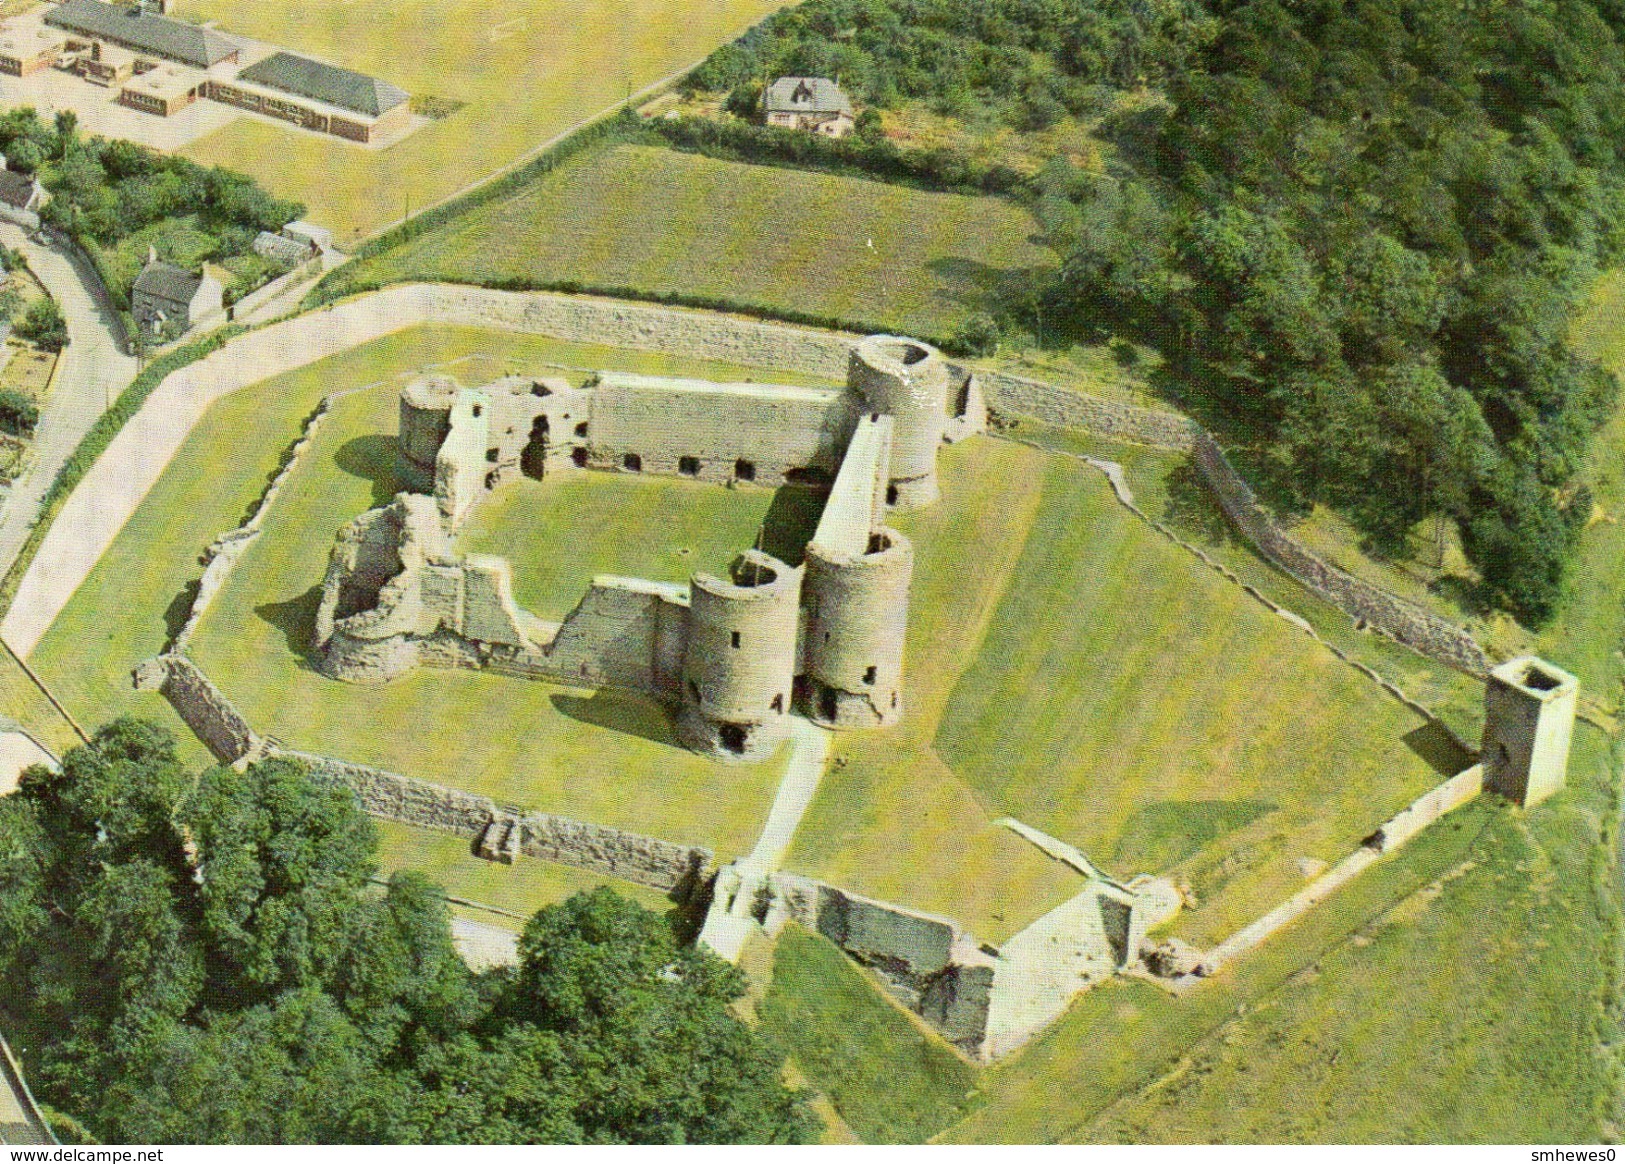 Postcard - Rhuddlan Castle, Flintshire. P.2. - Flintshire